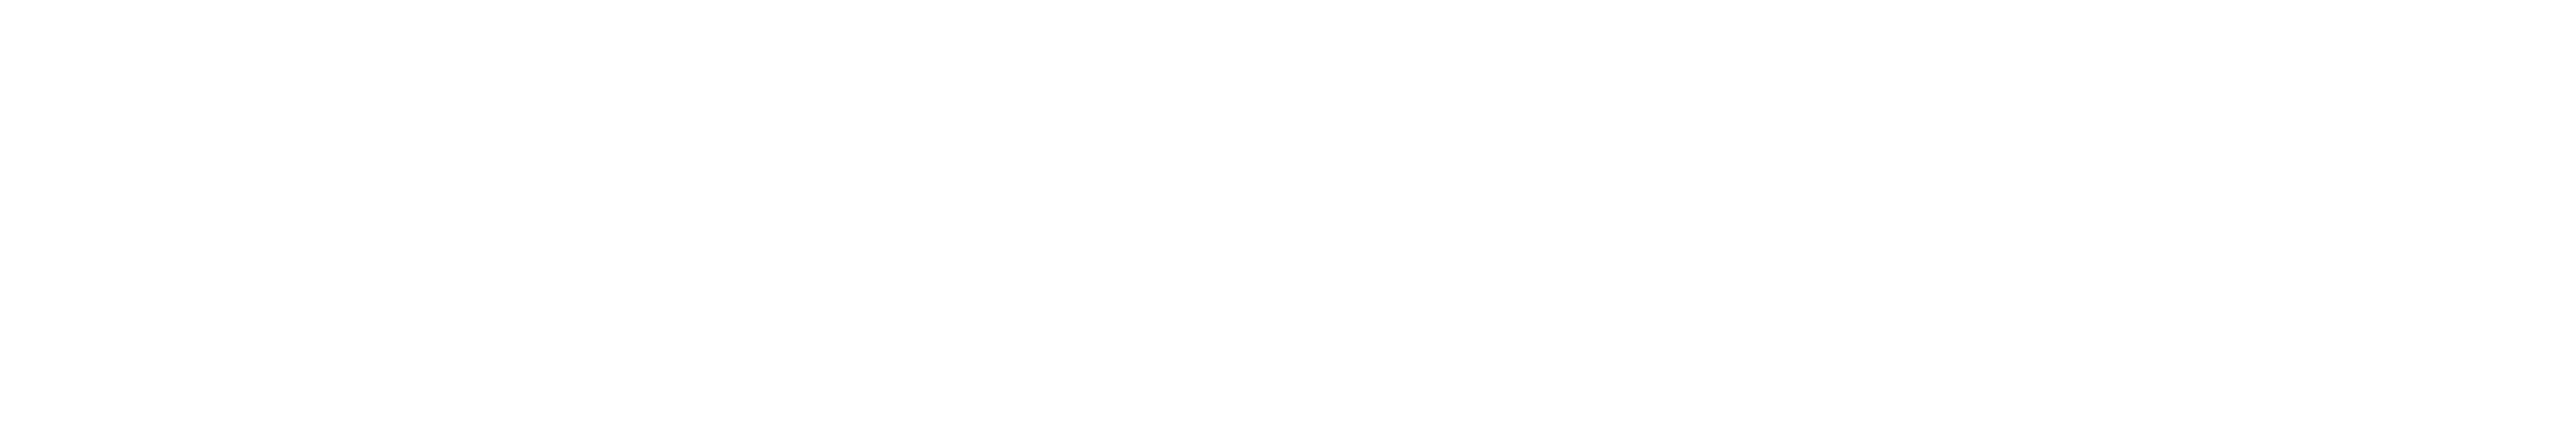 KI-Champions_BW_Logo_white